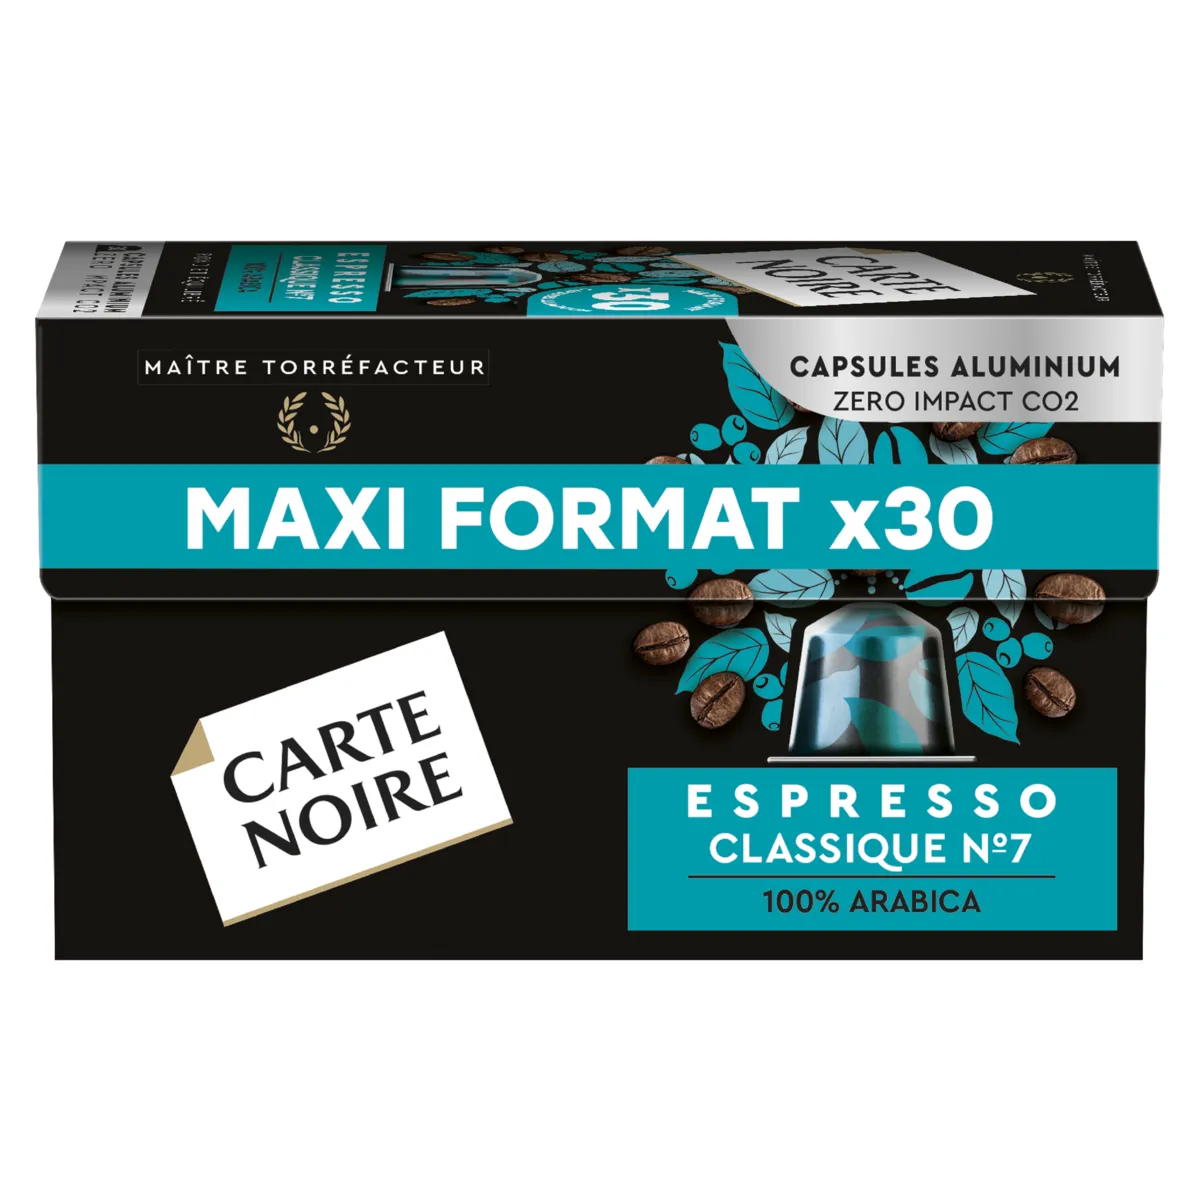 capsules espresso classique n7 carte noire